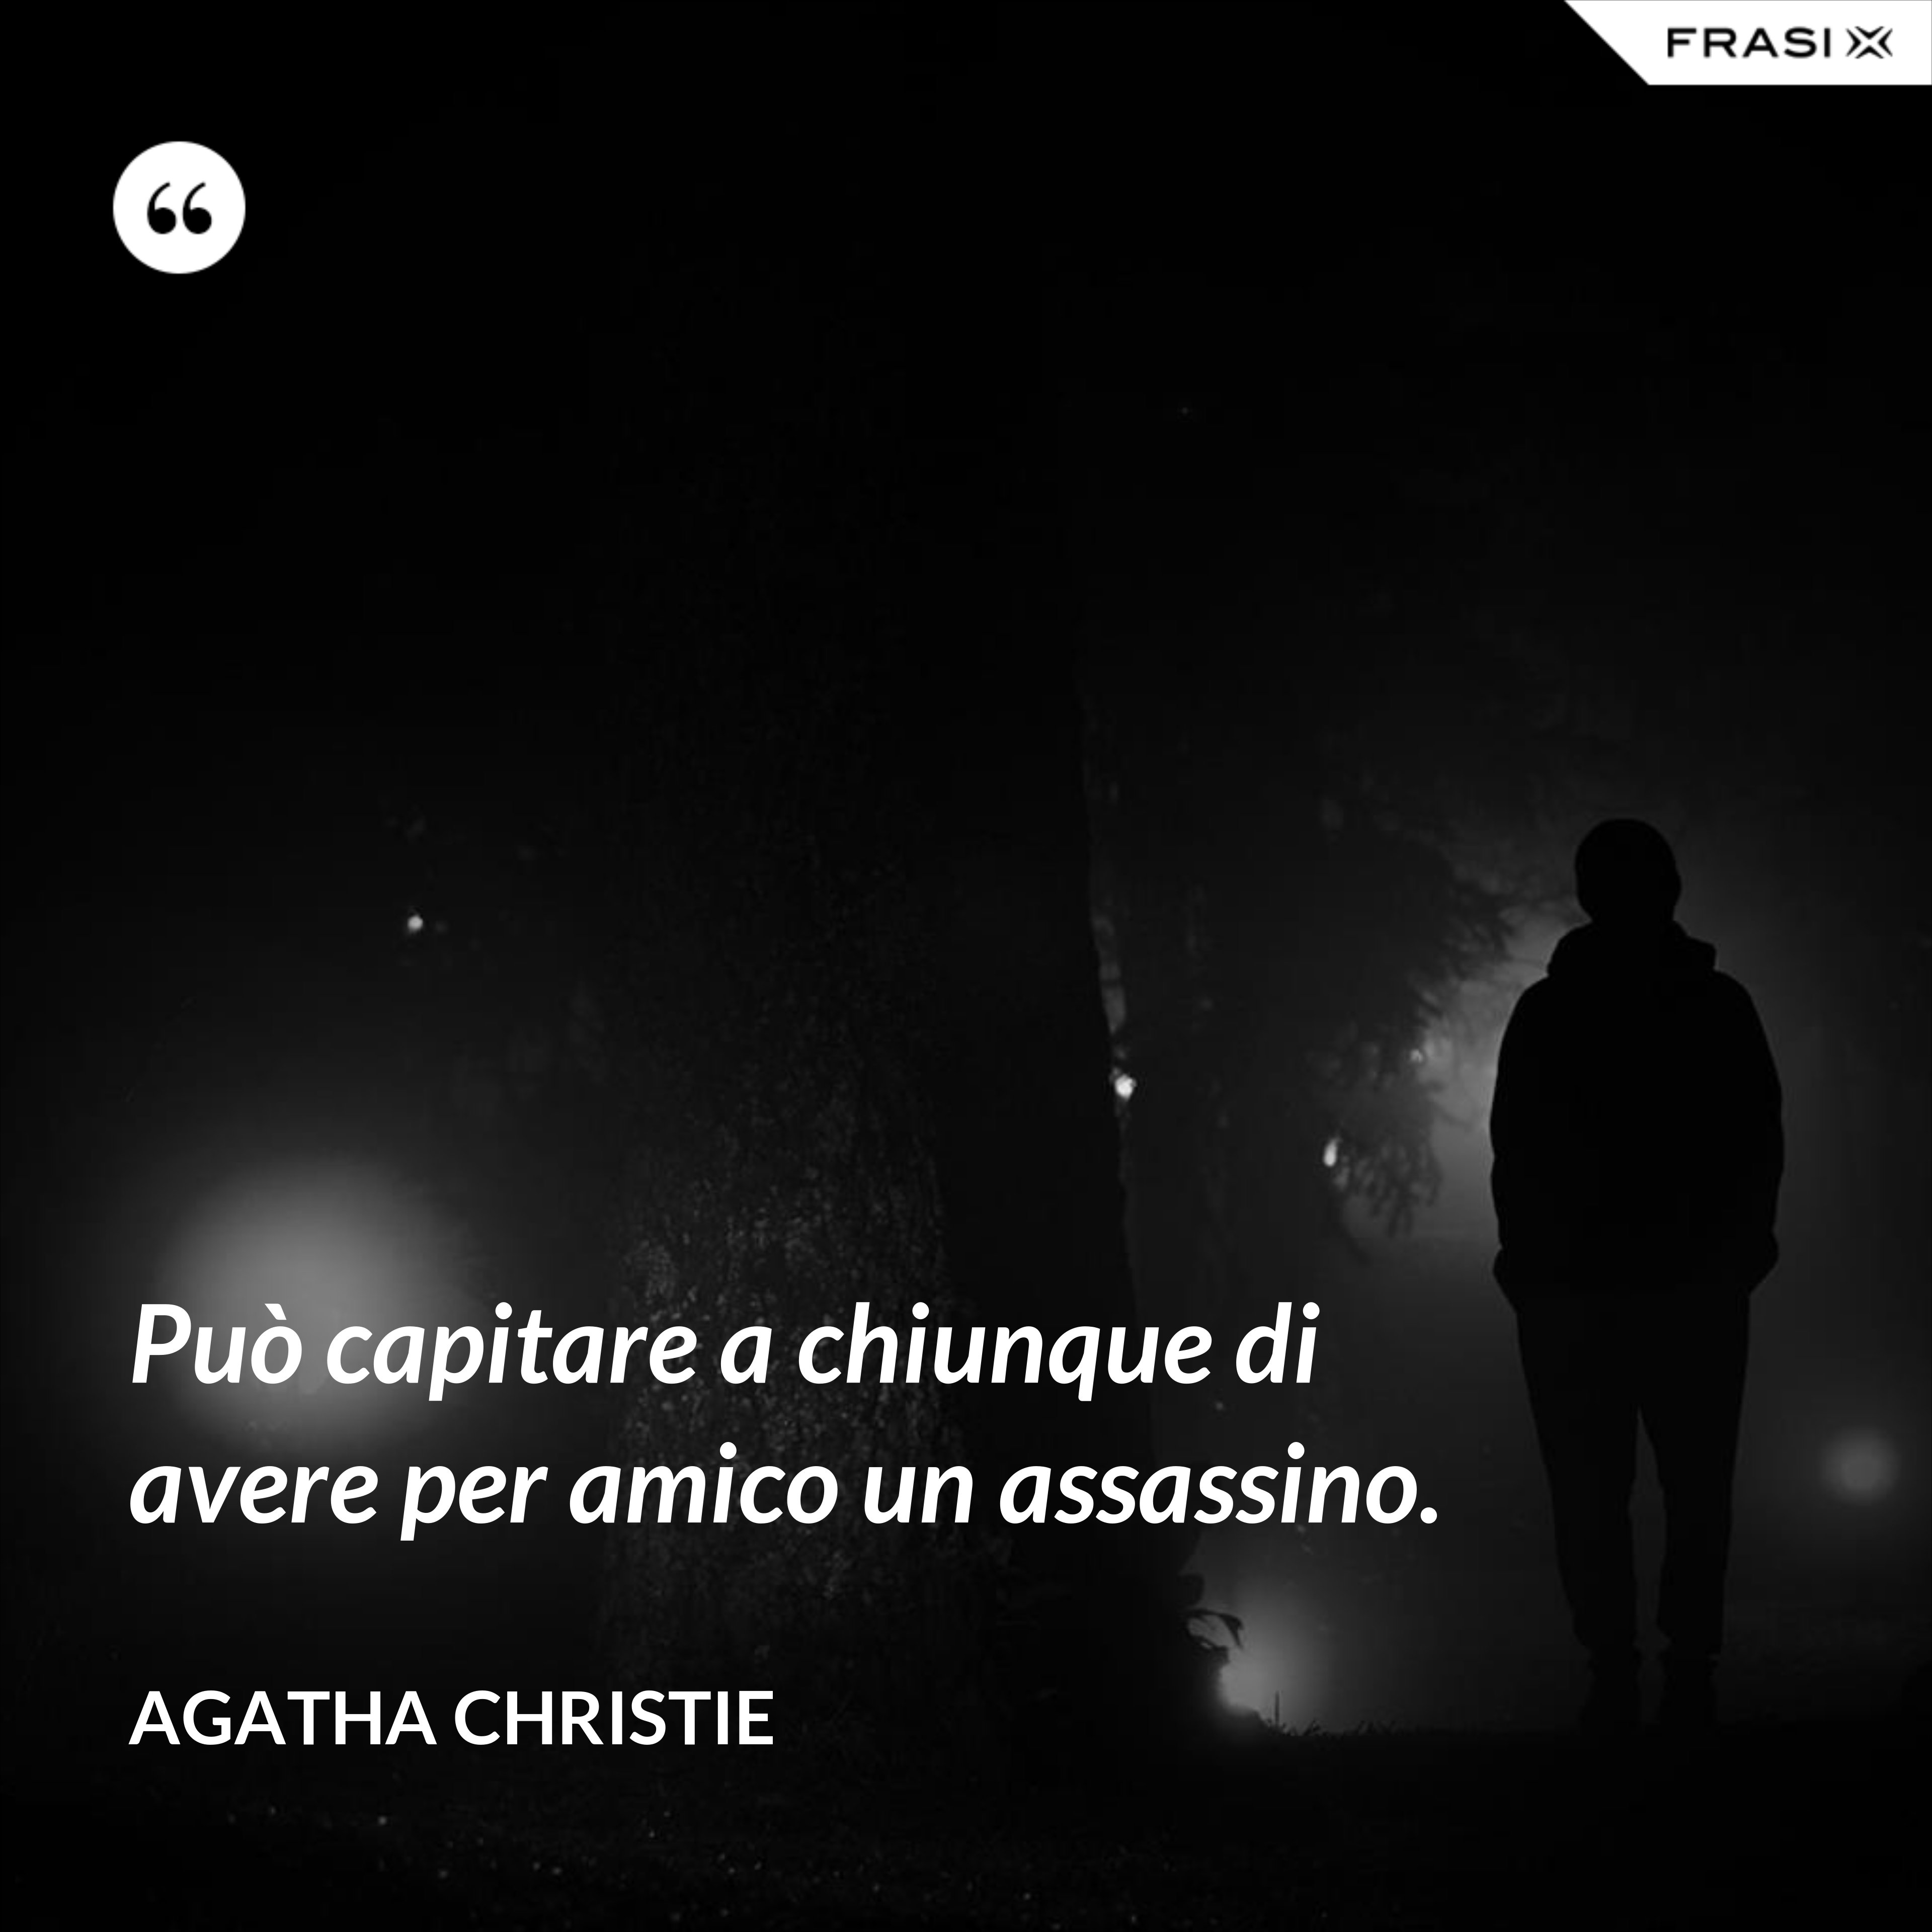 Può capitare a chiunque di avere per amico un assassino. - Agatha Christie